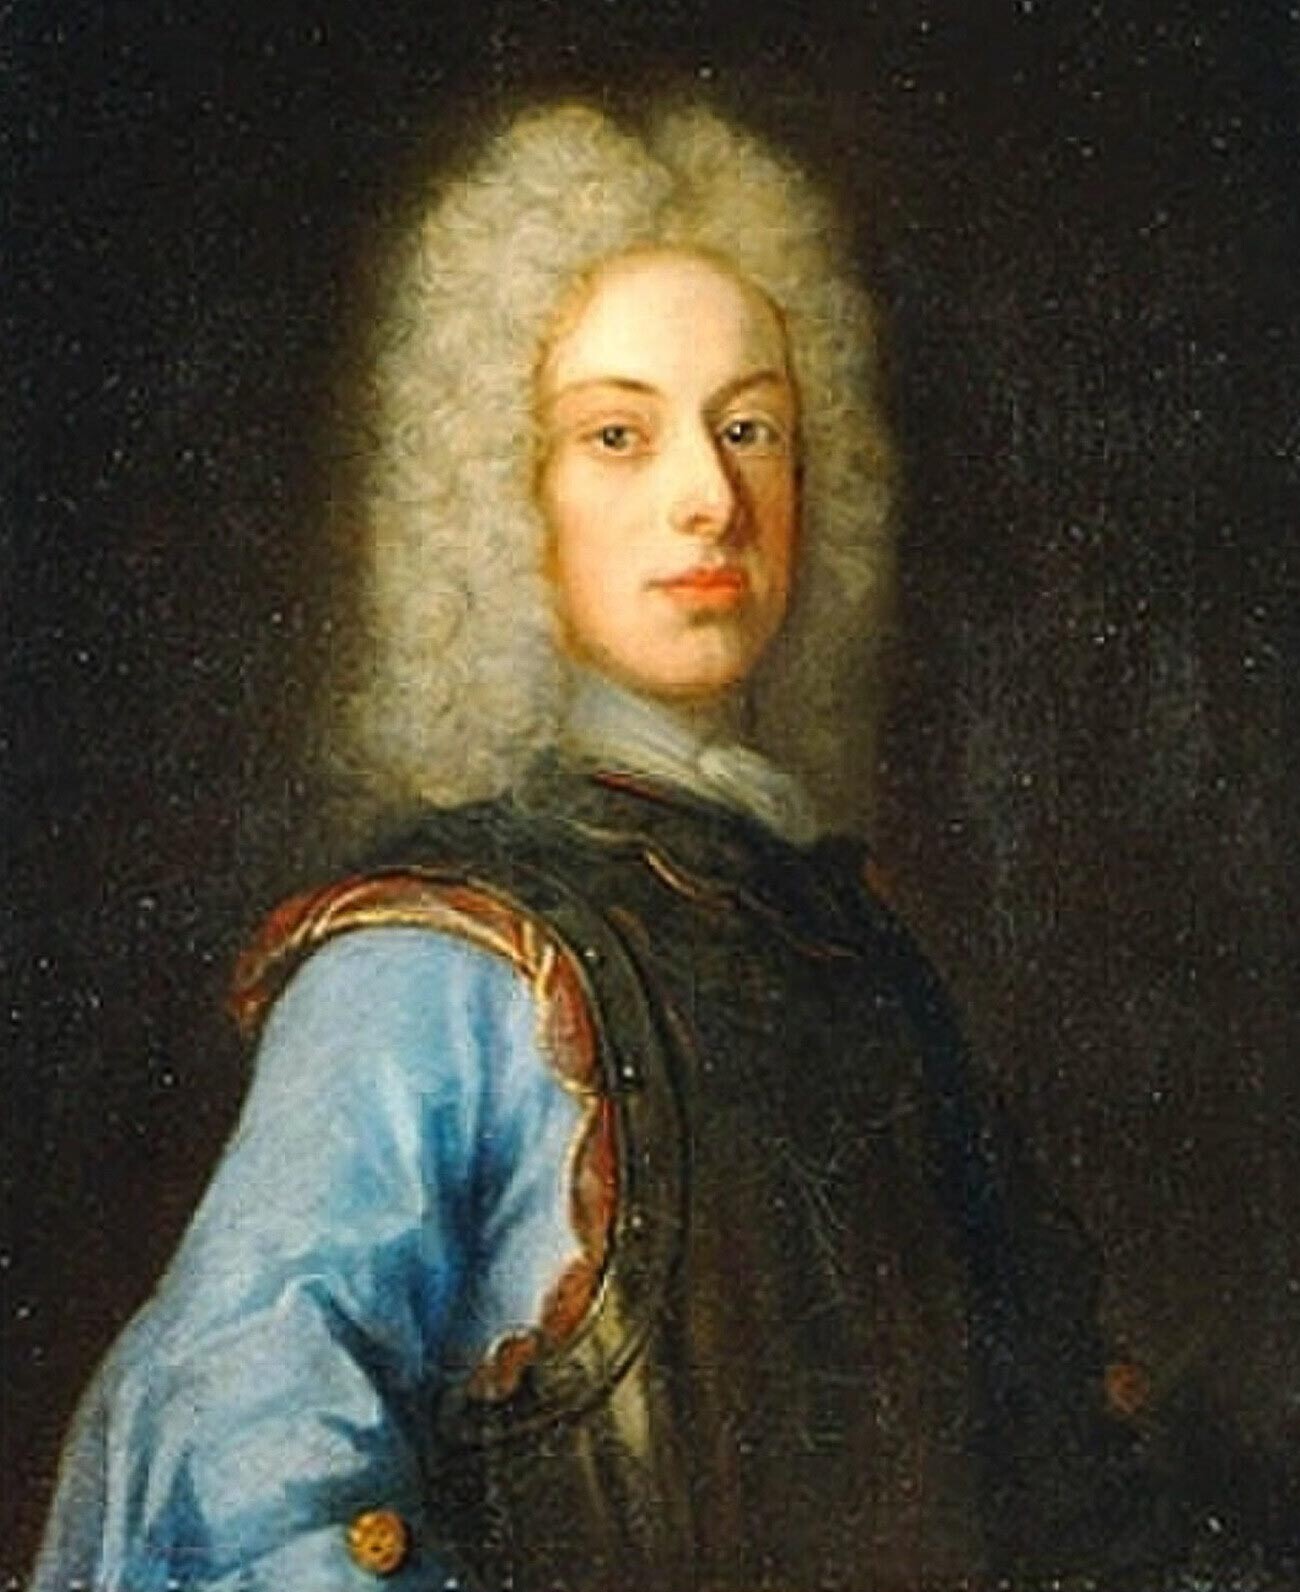 Charles-Frédéric de Suède